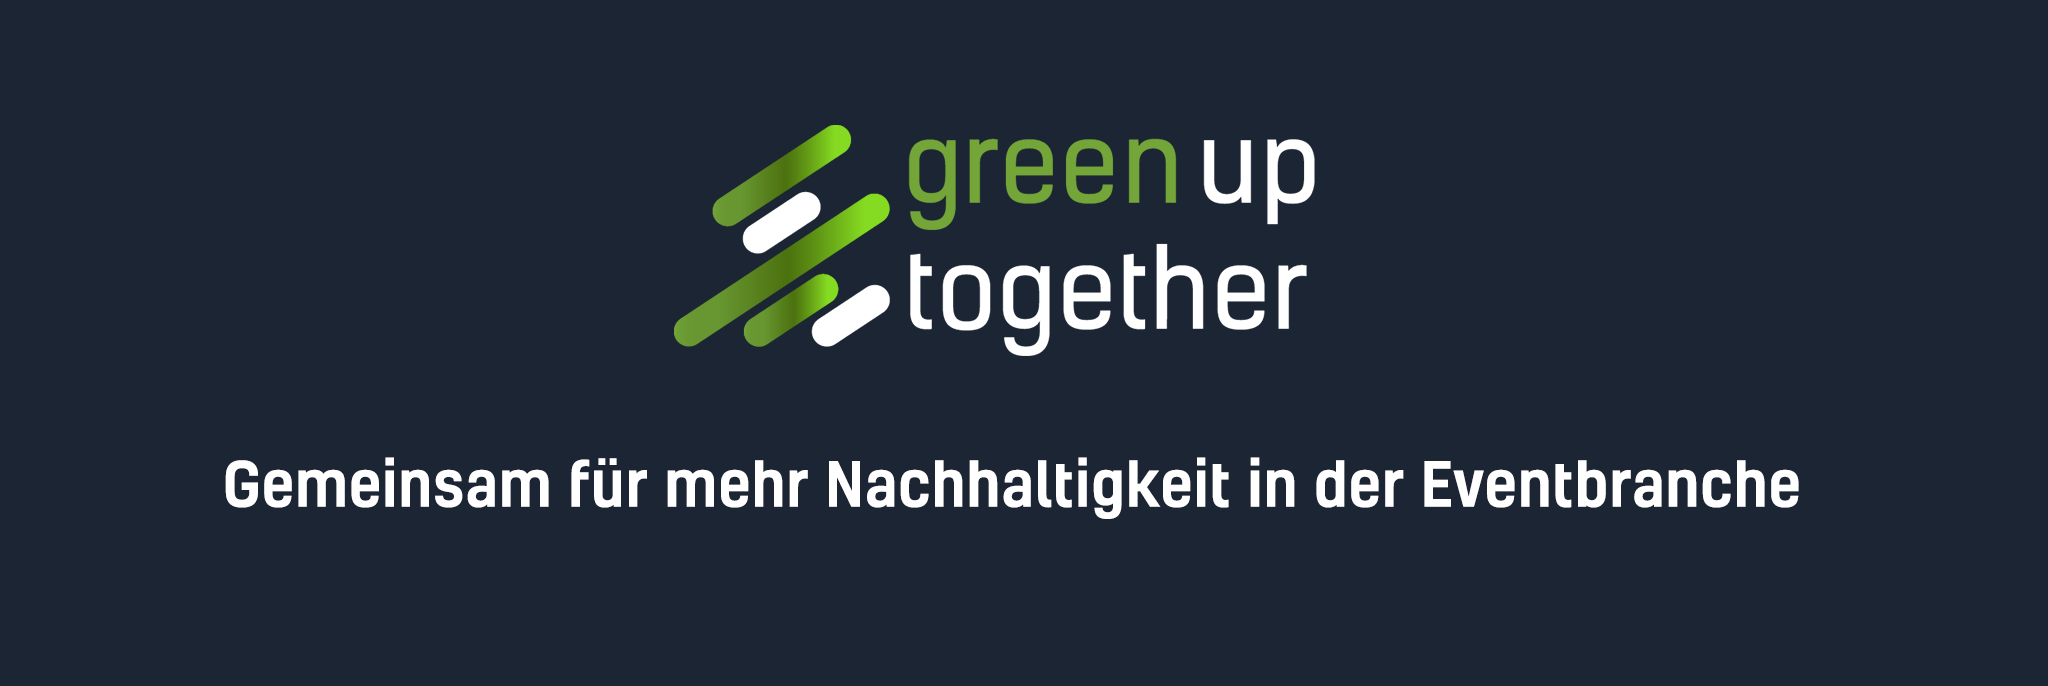 Green up together Nachhaltigkeit Aktion LEaT